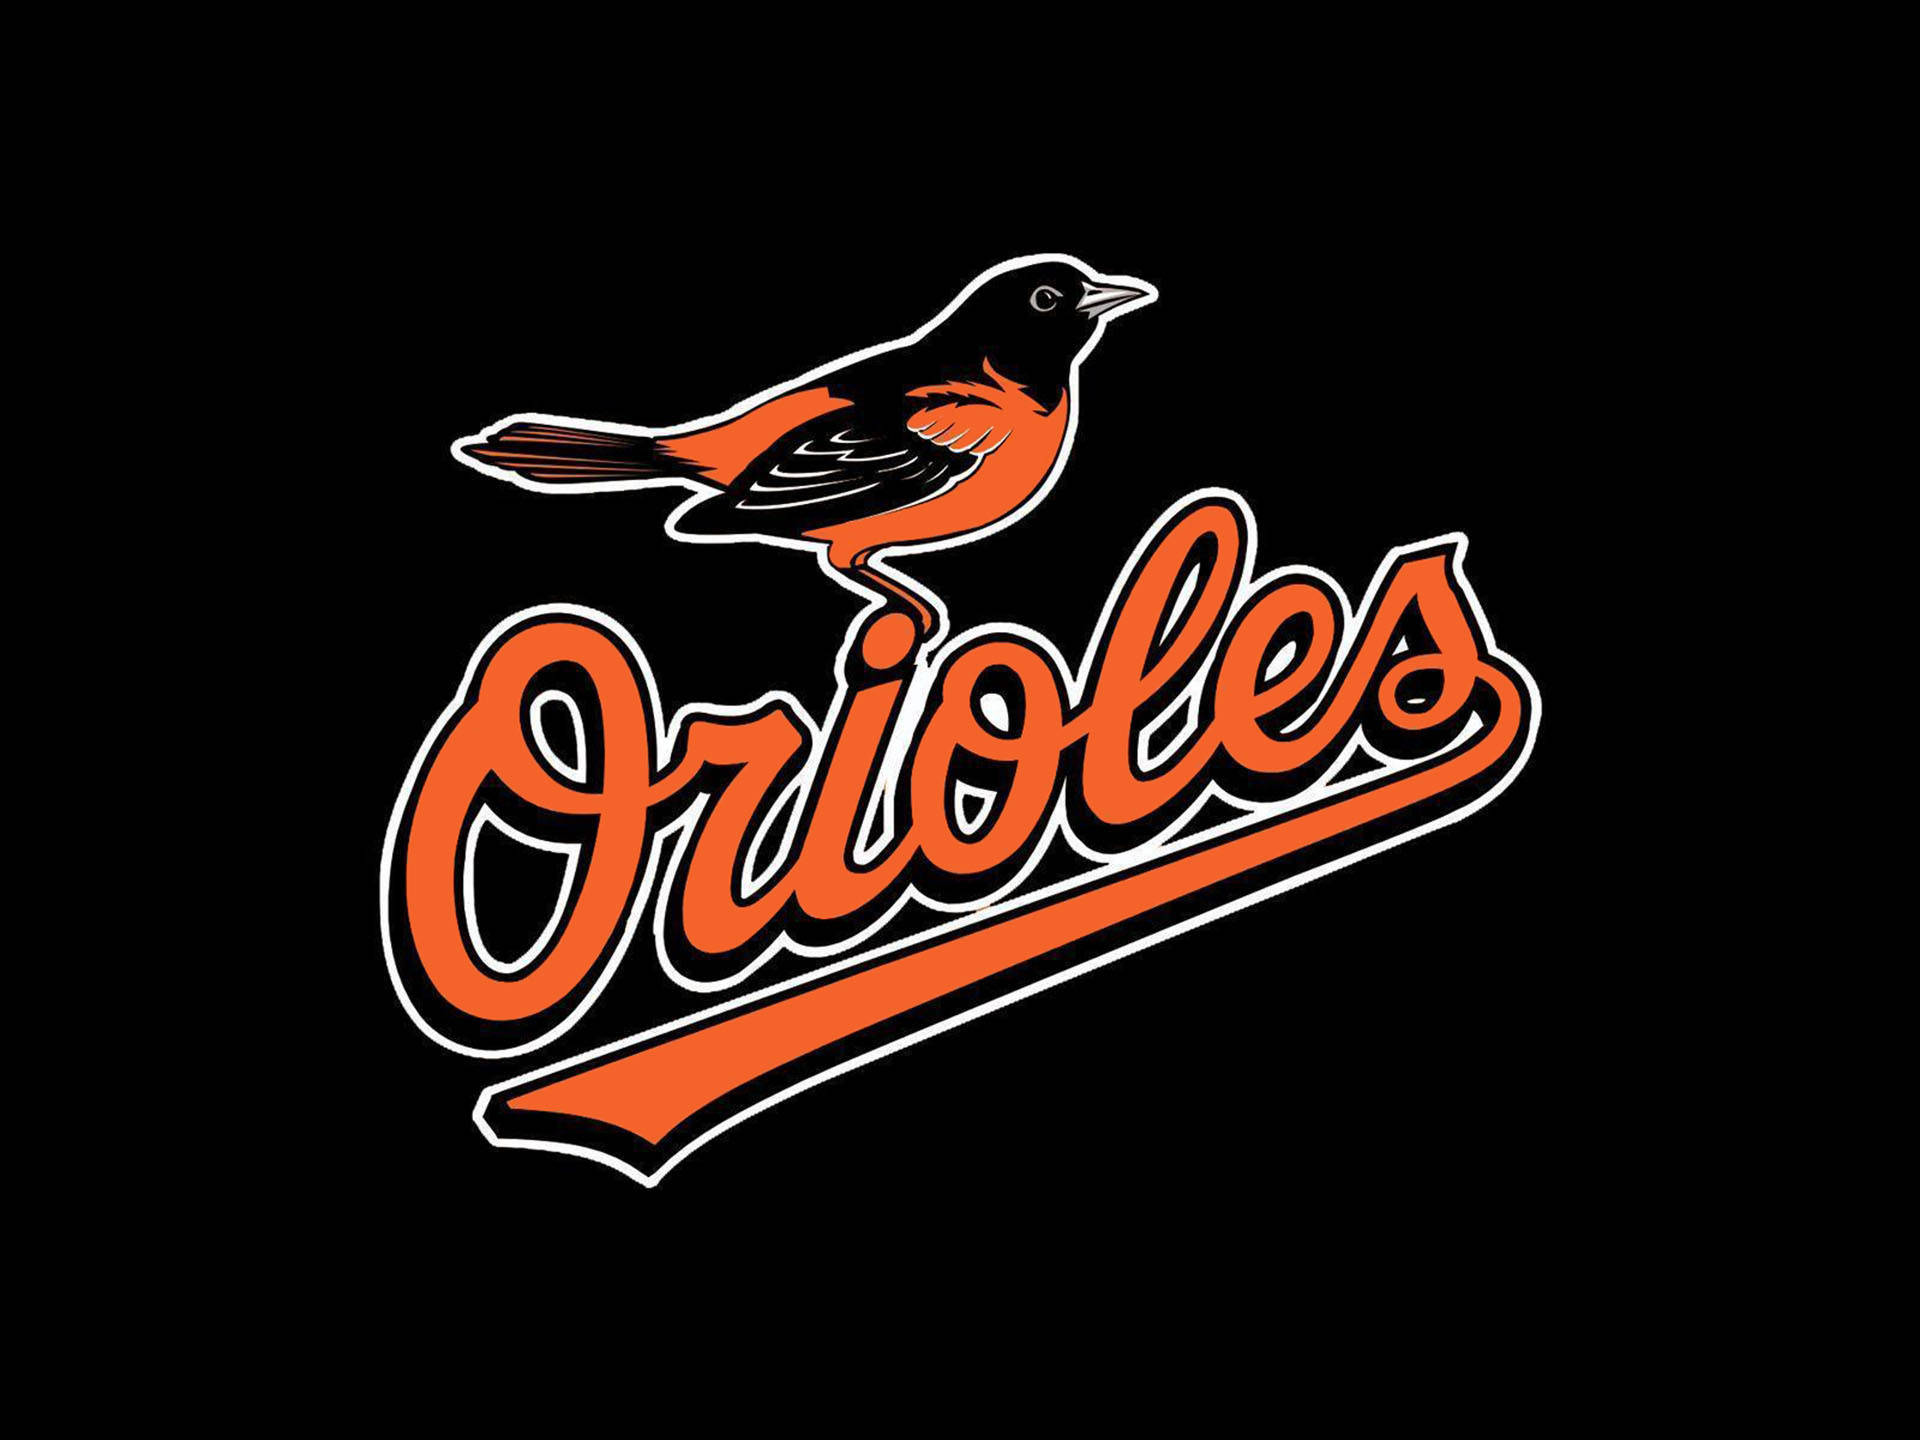 2009 Baltimore Orioles Logo Background